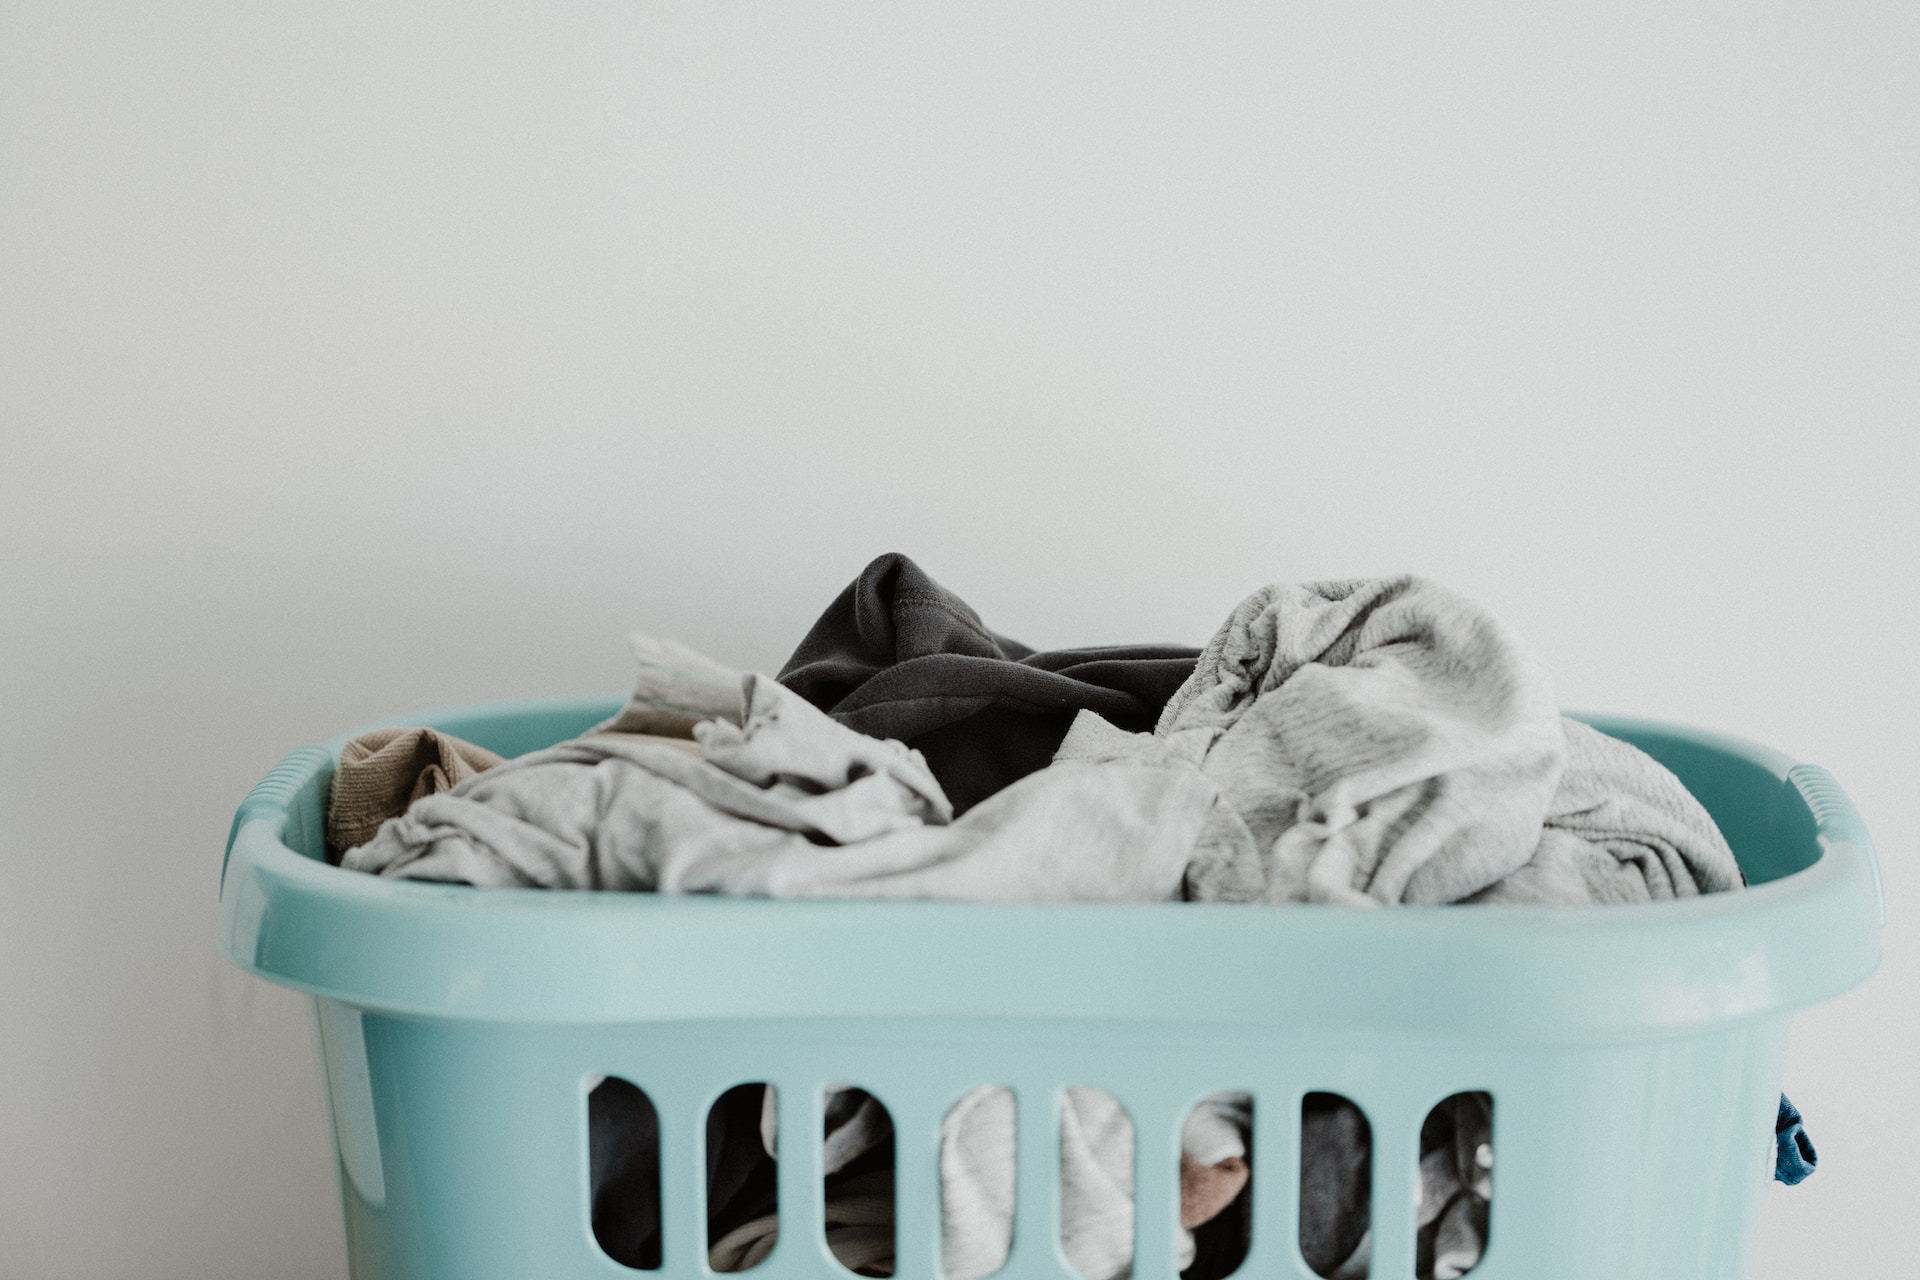 Menyayangi Baju Kesayangan? Berikut Tips Mencuci yang Tepat Agar Awet dan Tak Pudar!